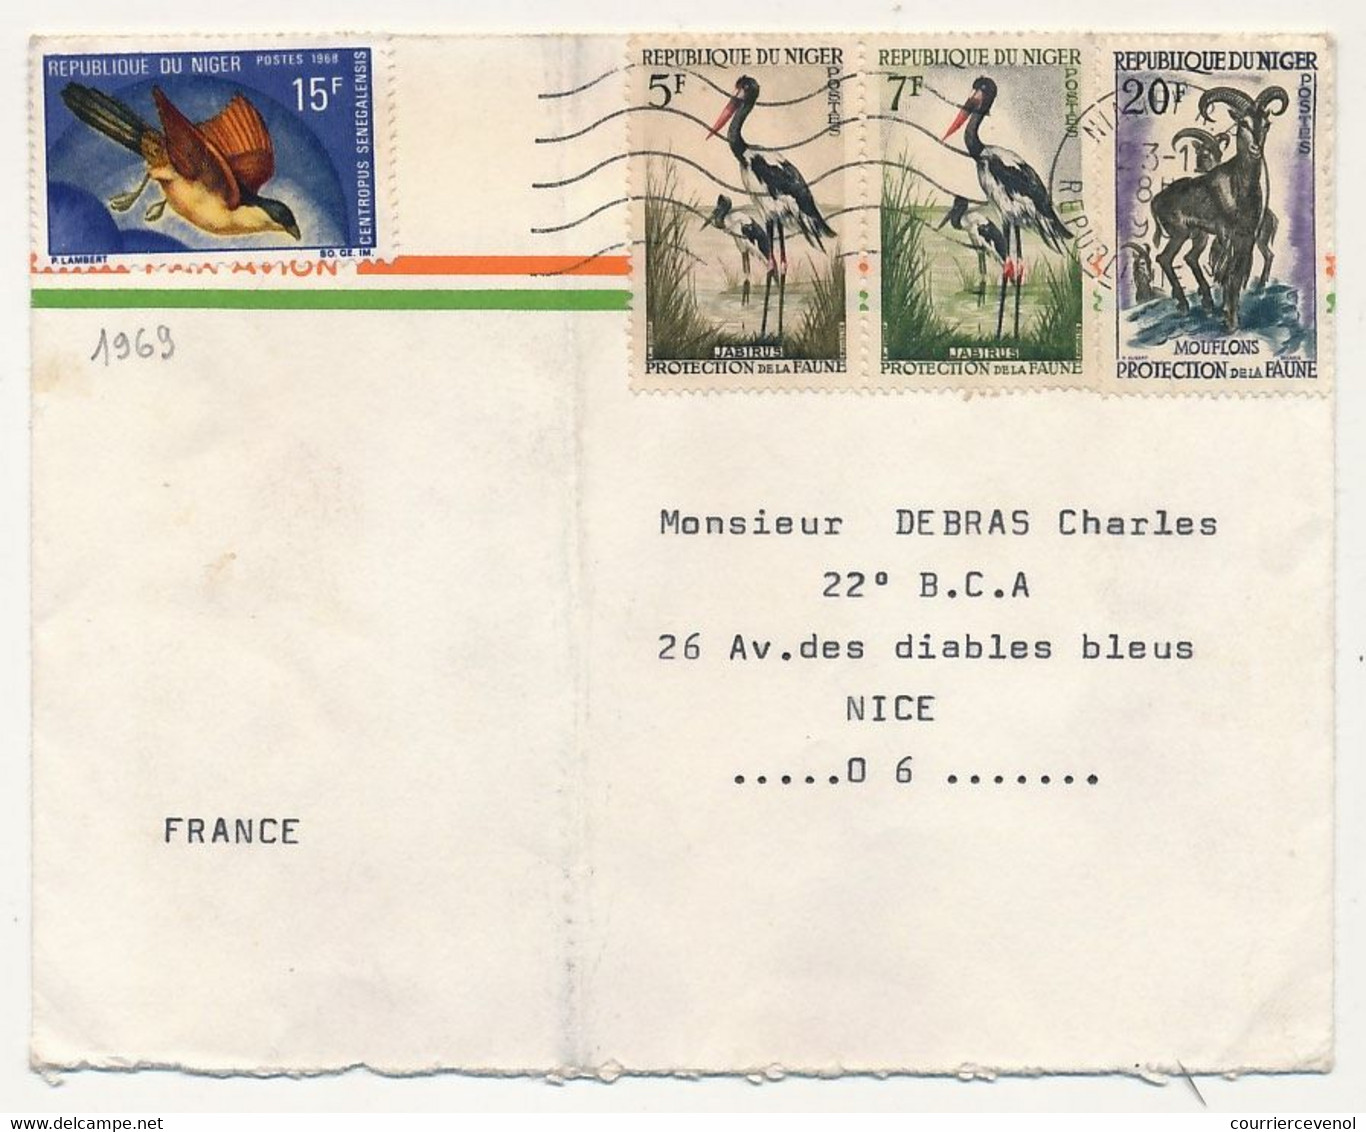 NIGER - 15 enveloppes affranchissements composés ou divers, plupart timbres animaux